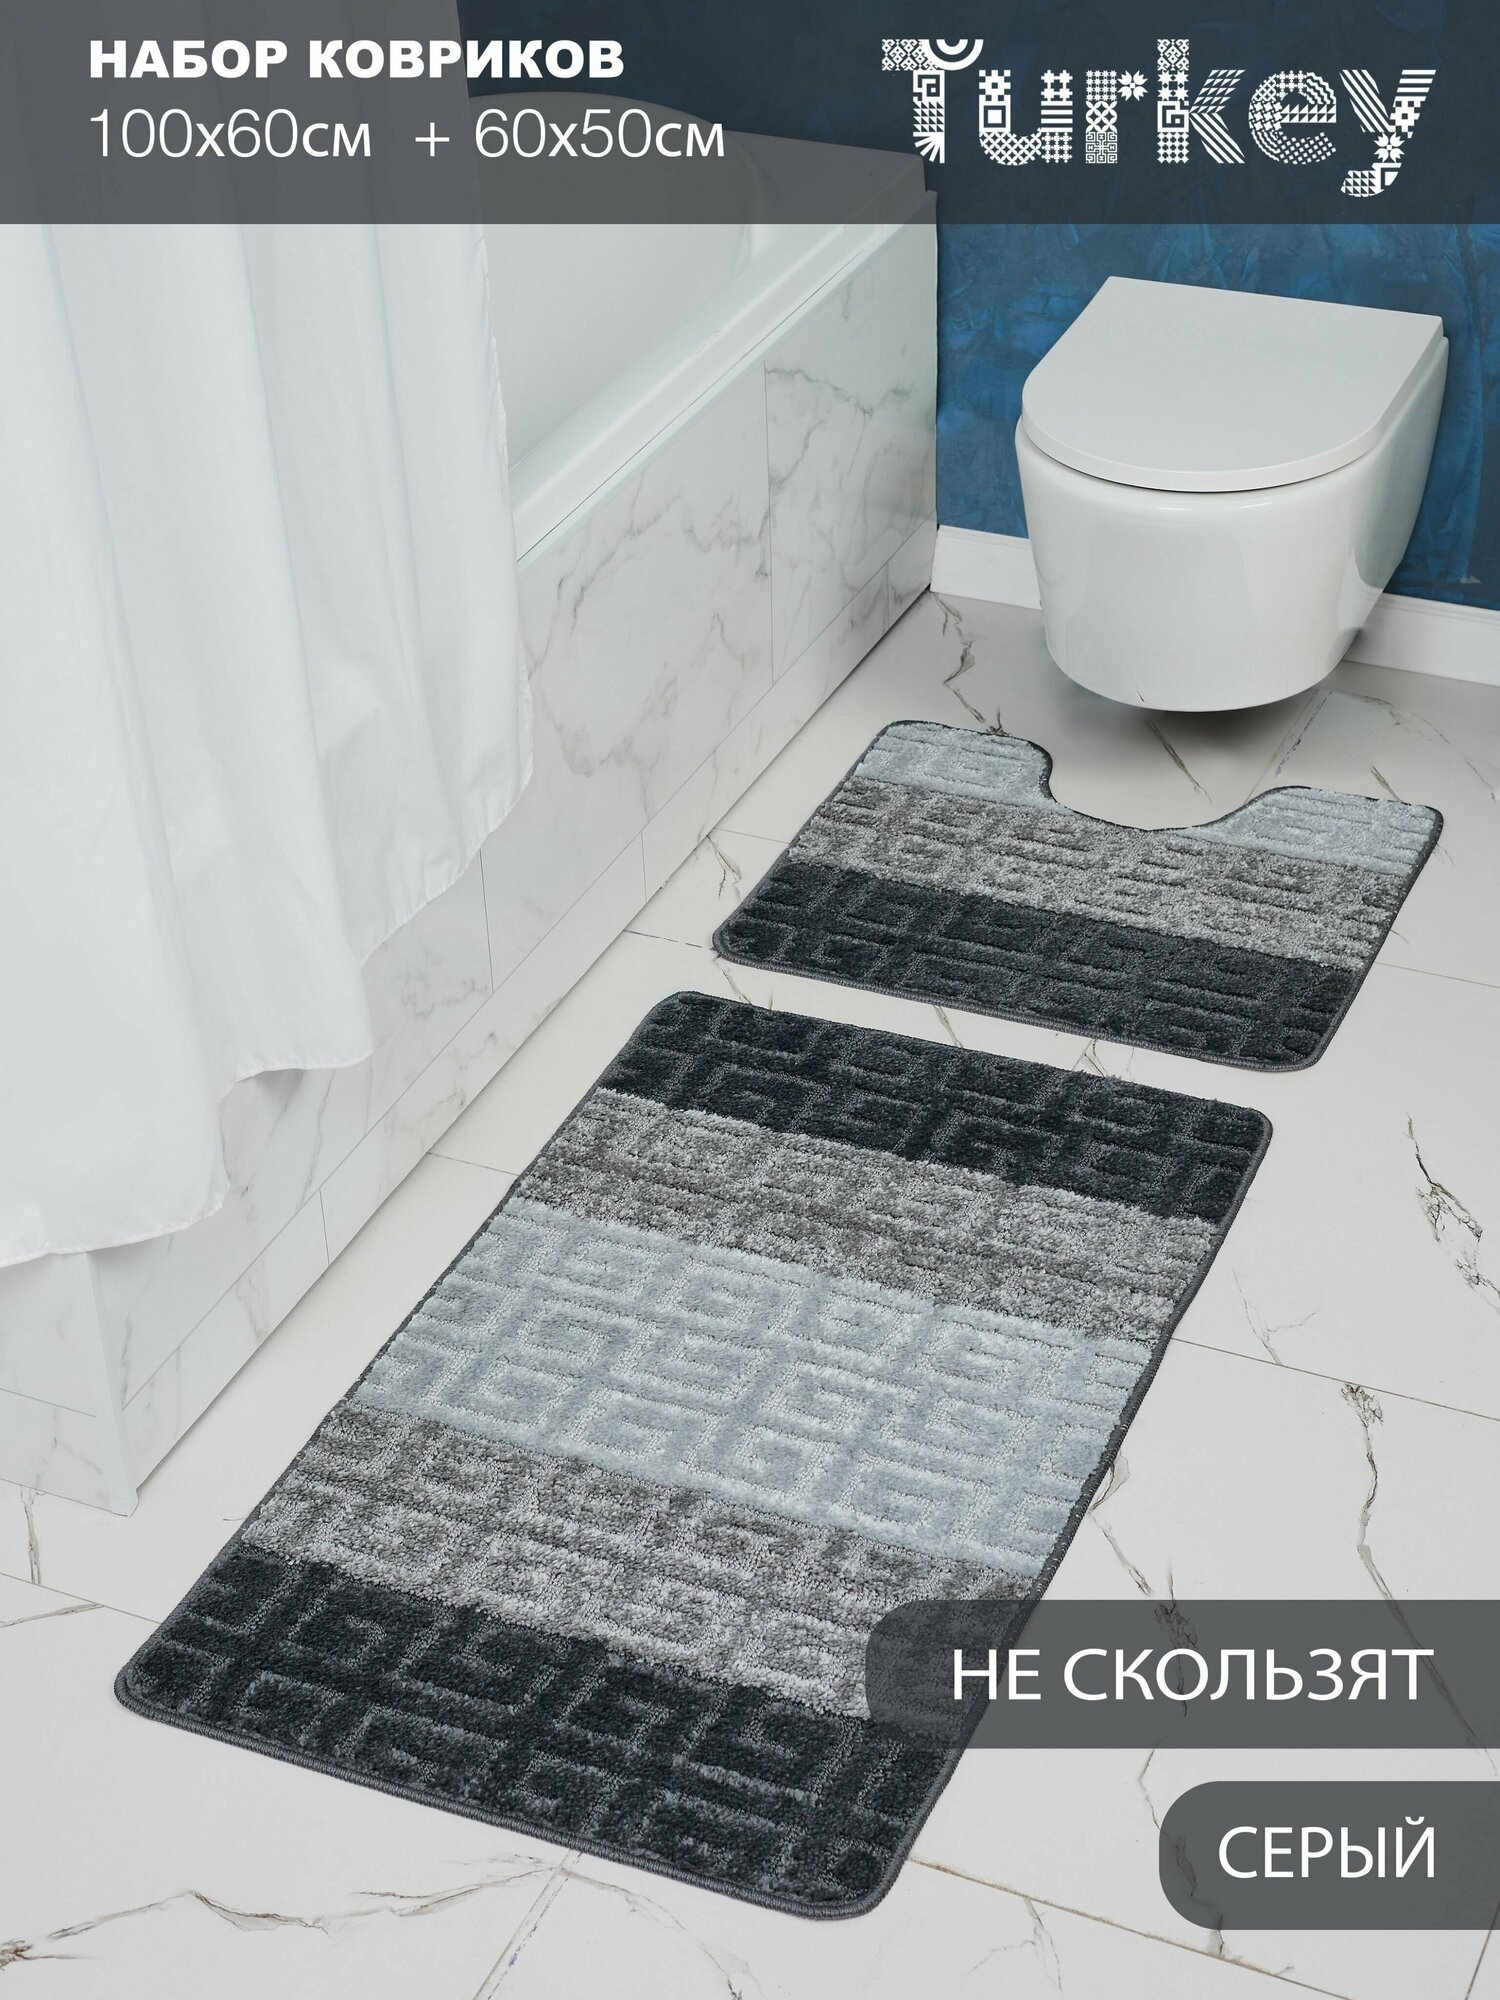 Набор противоскользящих ковриков для ванной и туалета, серый, Solin, 100*60+50*60, 2 шт.